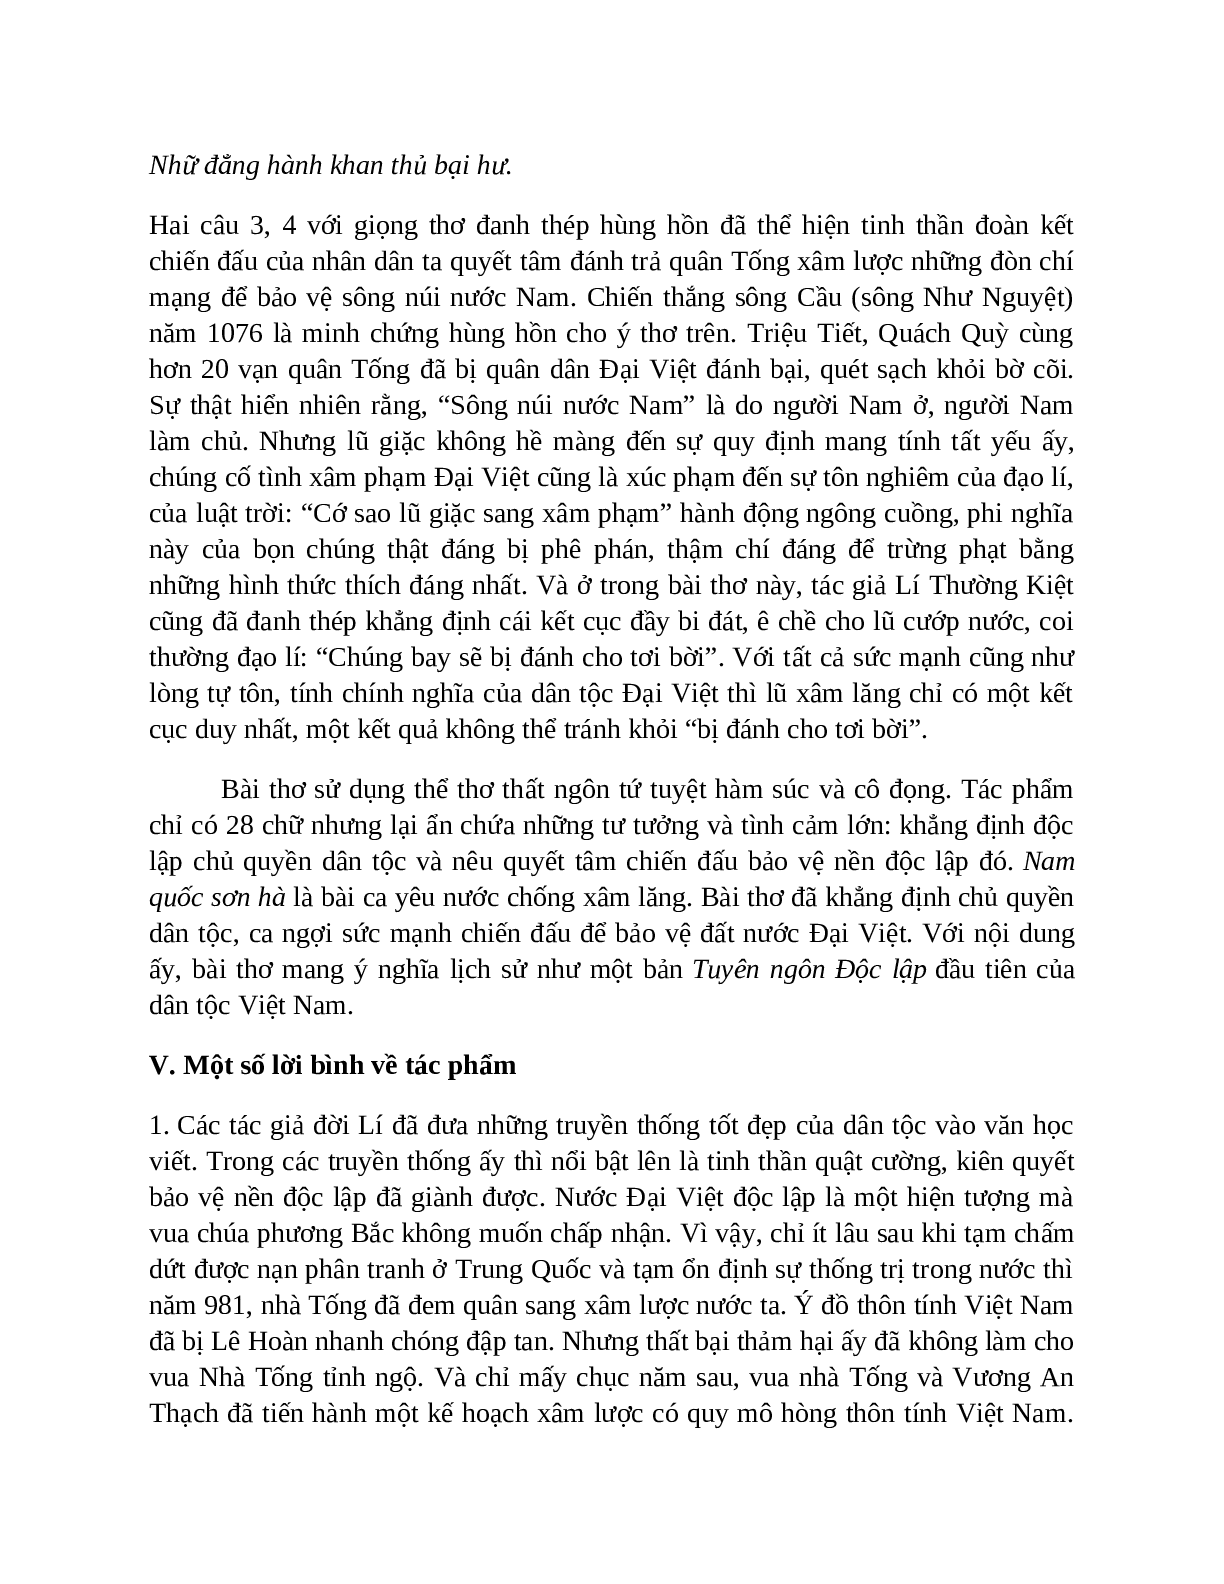 Sơ đồ tư duy bài Sông núi nước Nam dễ nhớ, ngắn nhất - Ngữ văn lớp 7 (trang 5)